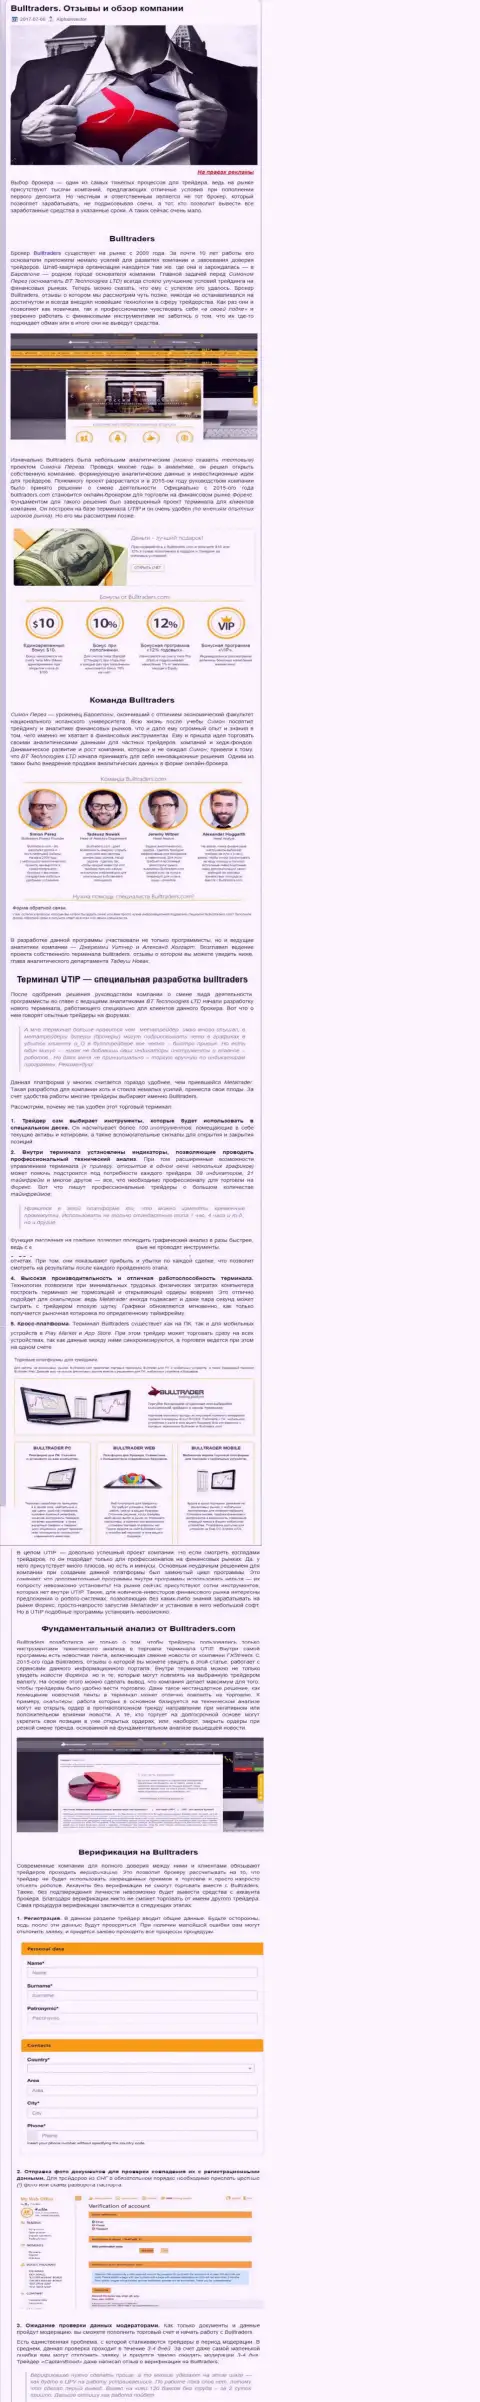 Обзор методов торговли Форекс дилингового центра BT Technologies LTD в авторской публикации на веб-сервисе альфаинвестор ру